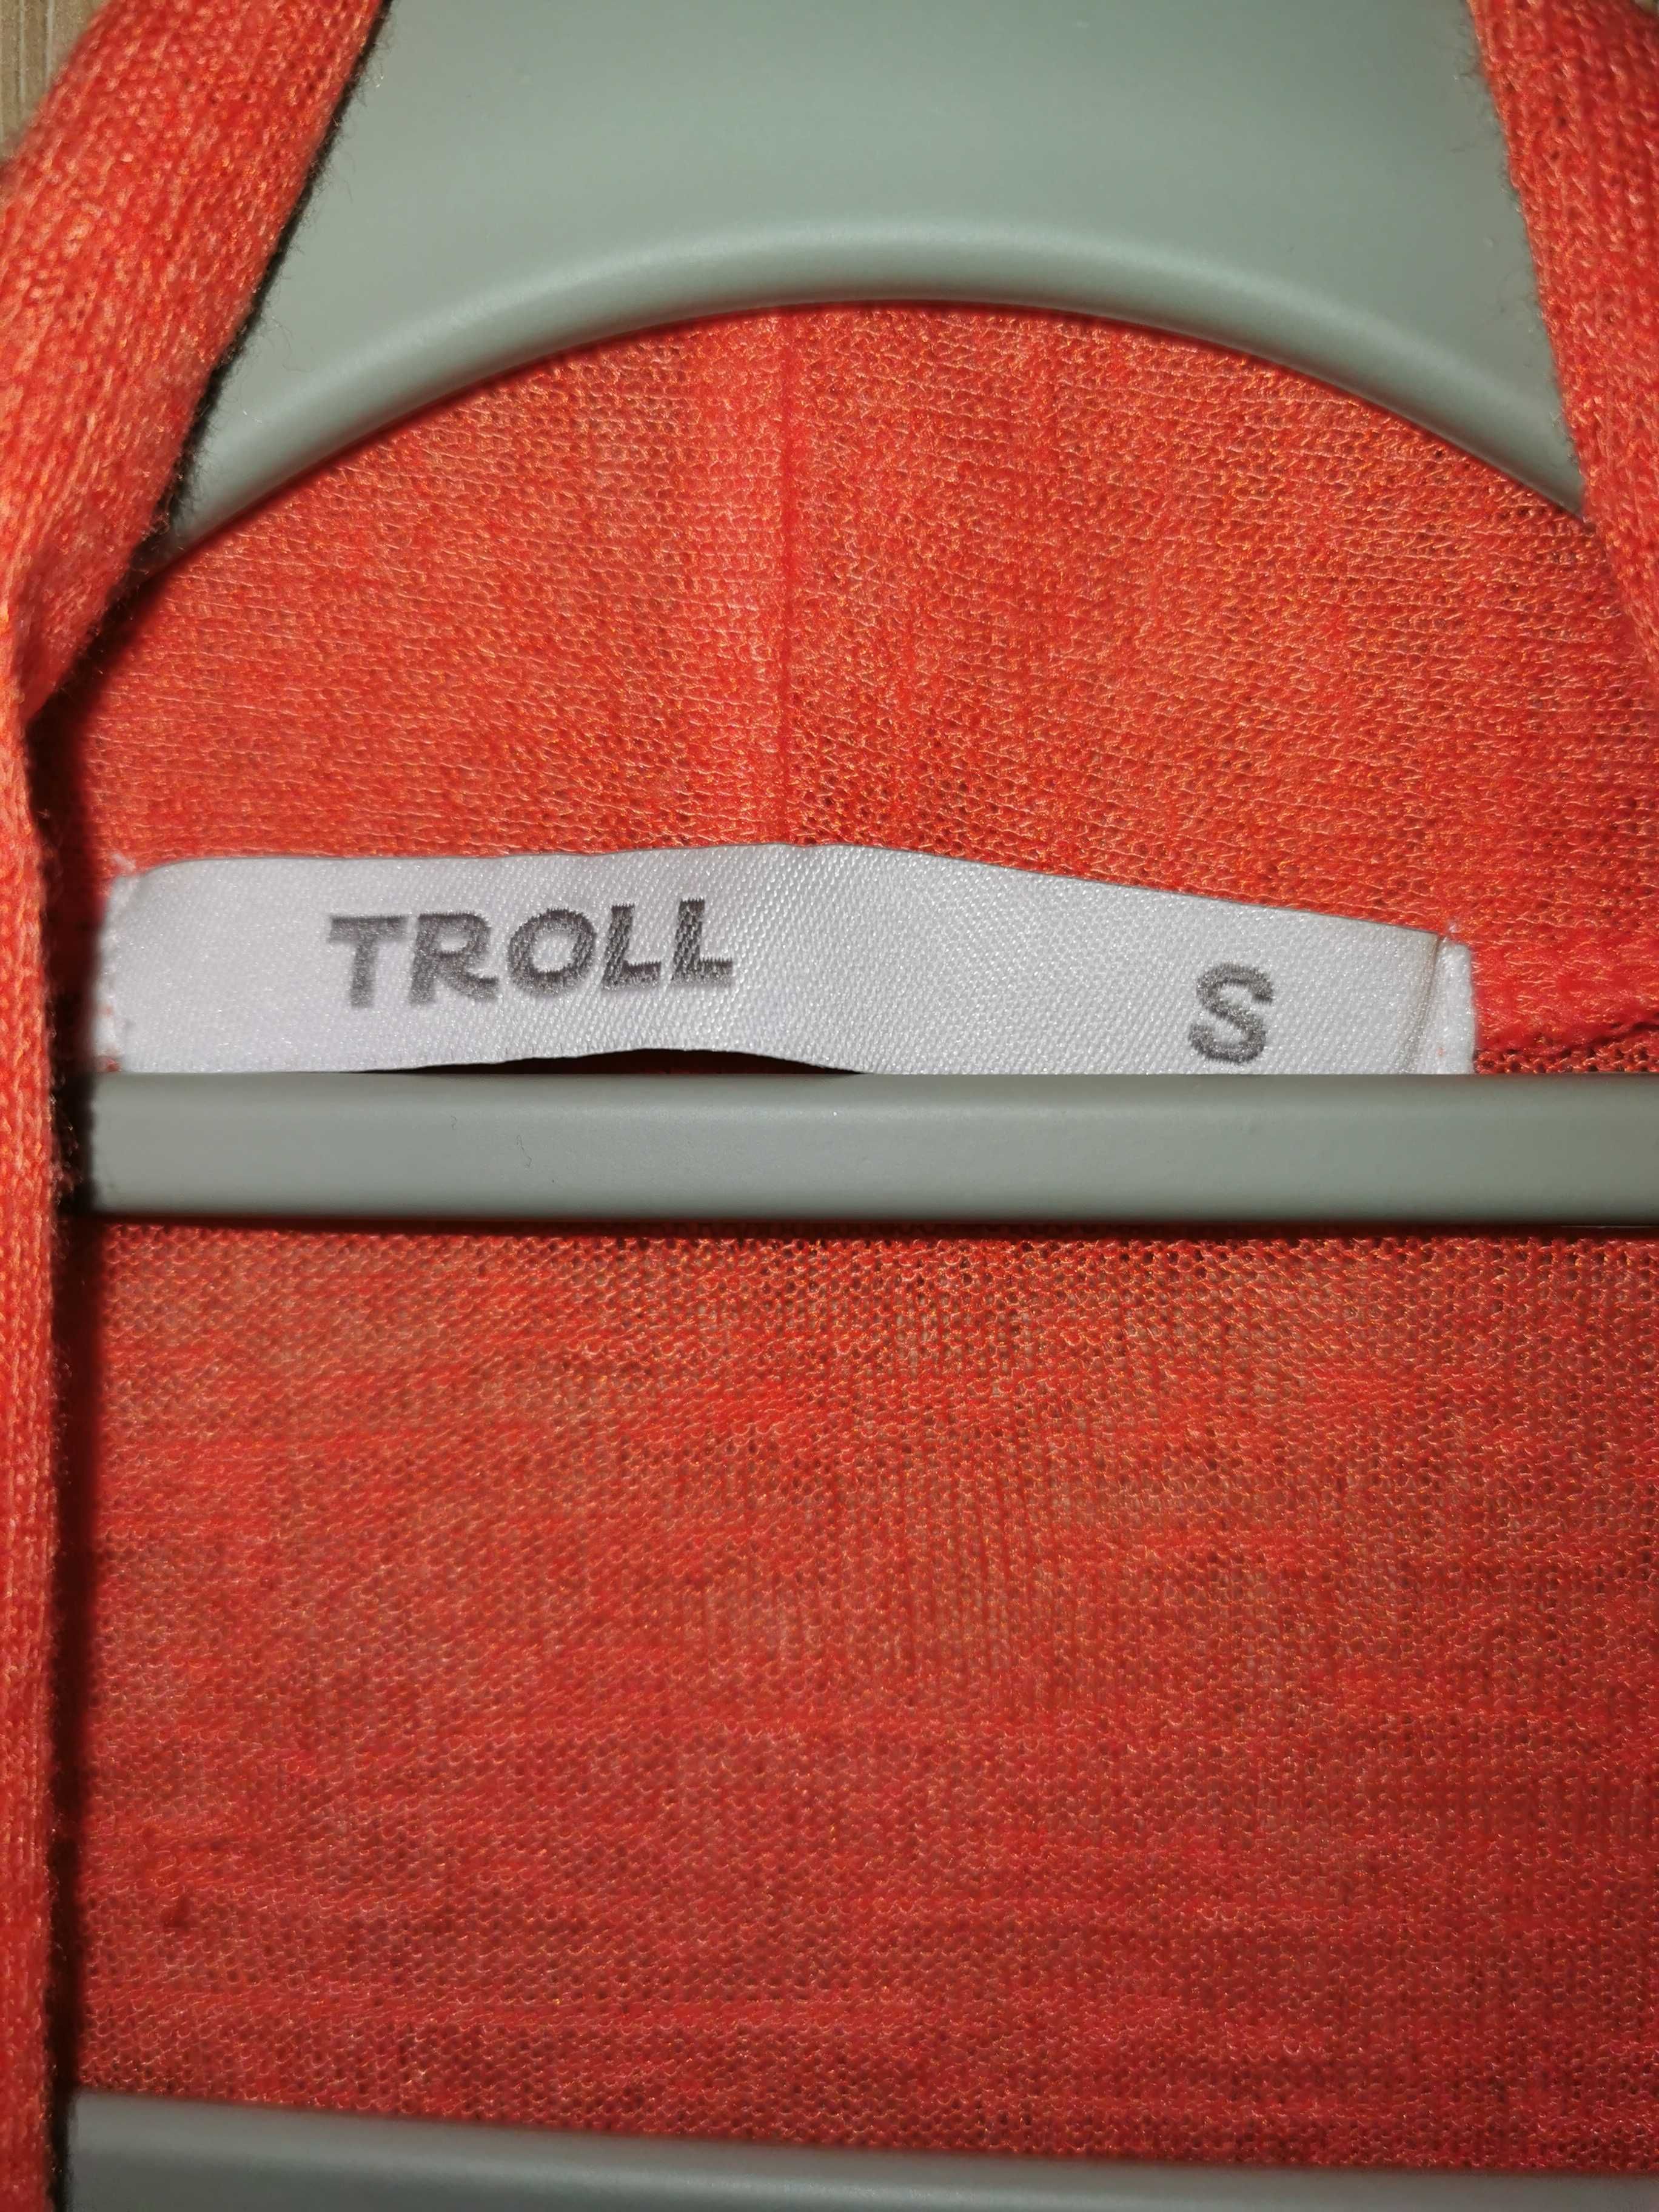 Troll - pomarańczowy kardigan - rozmiar S